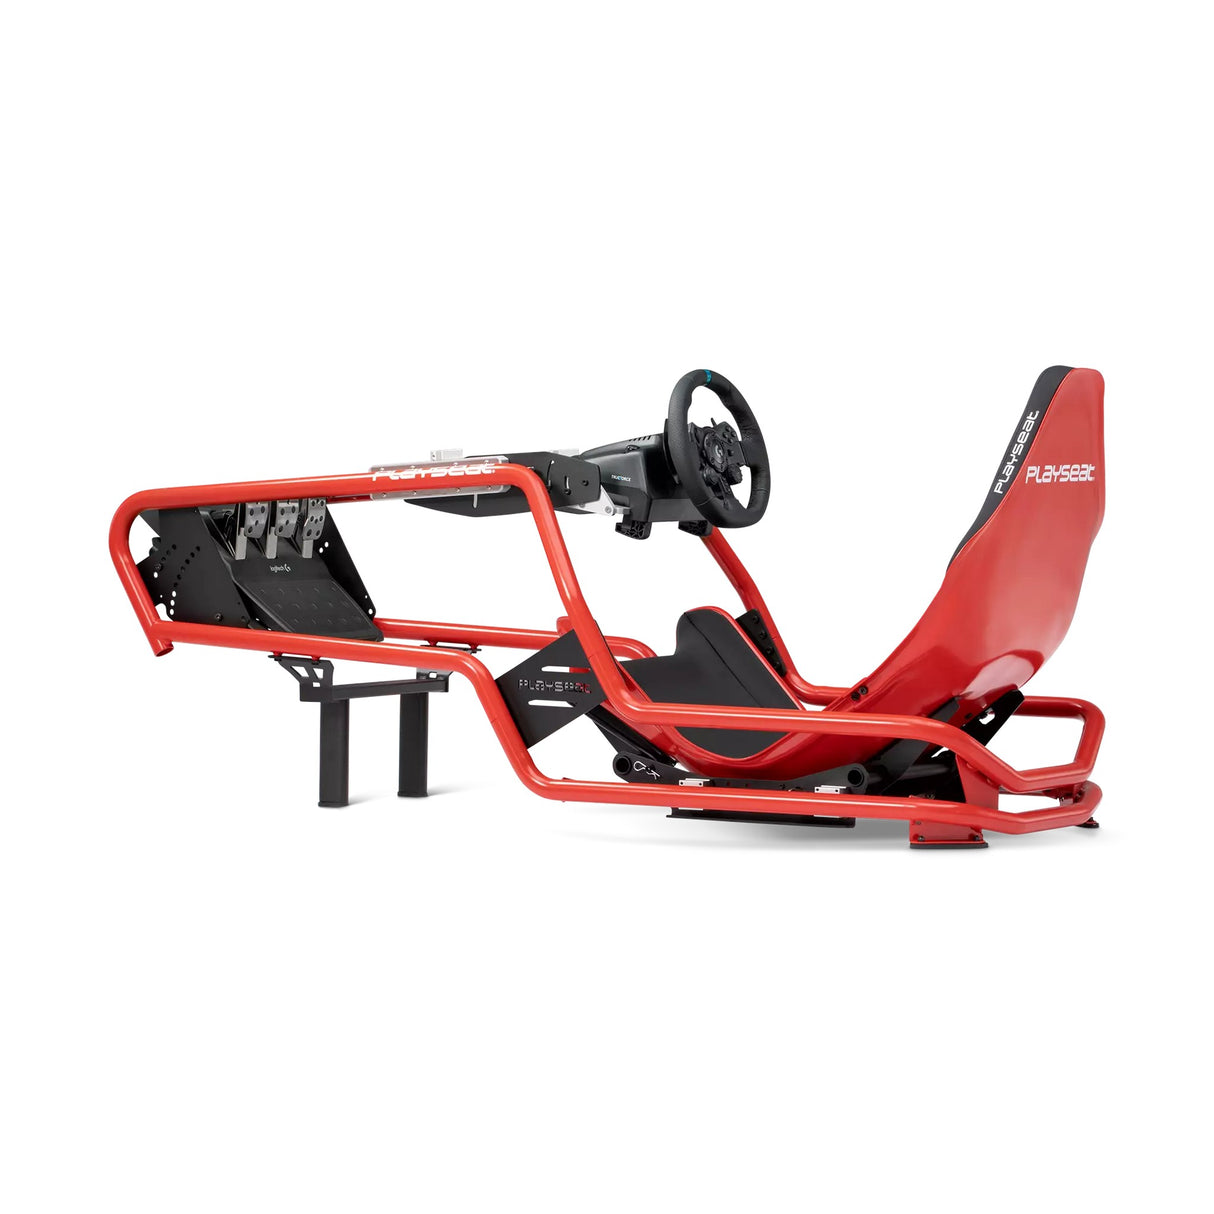 Playseat Formula Intelligence Gaming Racing Seat, Red